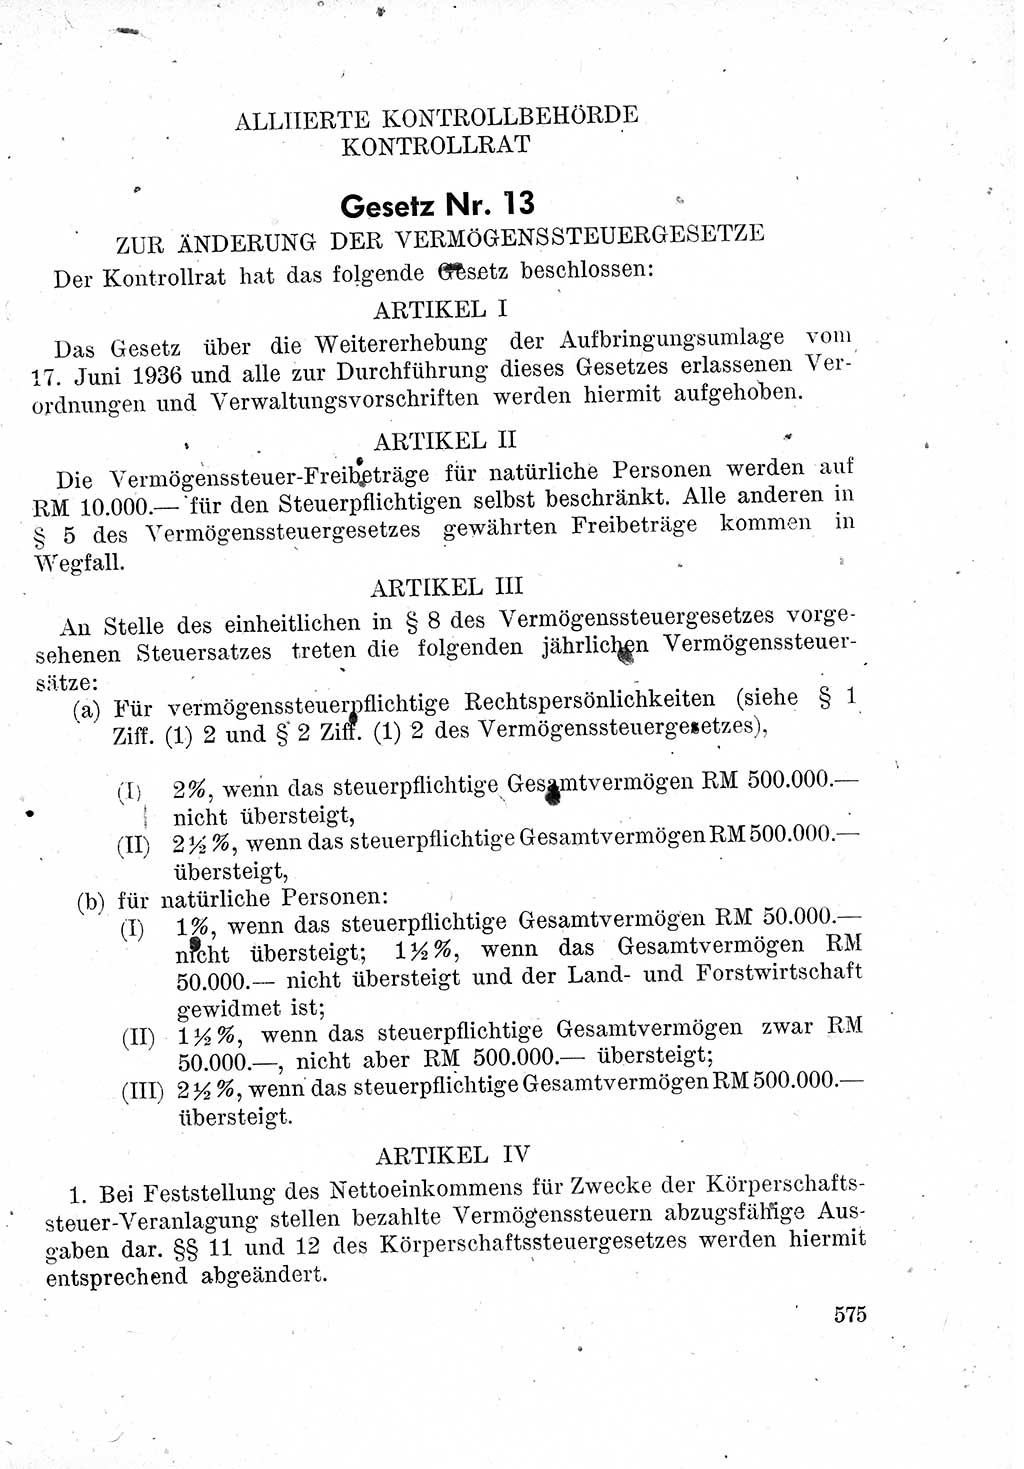 Das Recht der Besatzungsmacht (Deutschland), Proklamationen, Deklerationen, Verordnungen, Gesetze und Bekanntmachungen 1947, Seite 575 (R. Bes. Dtl. 1947, S. 575)